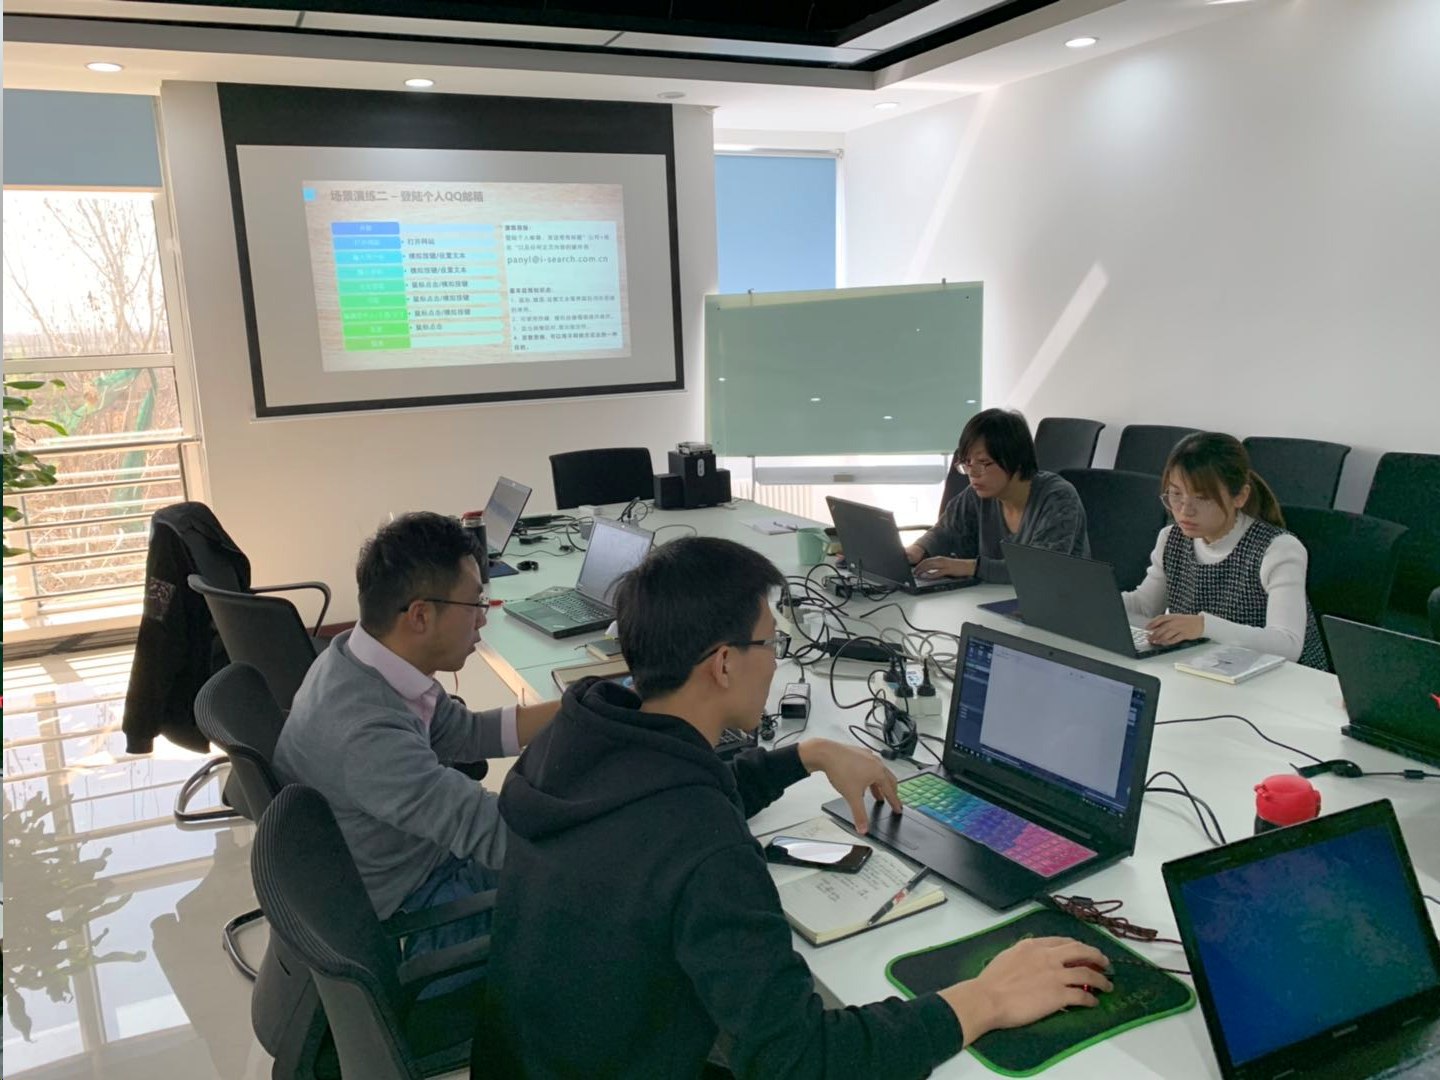 iS-RPA 技术认证培训 - 北京 20190313 班 - 培训完成